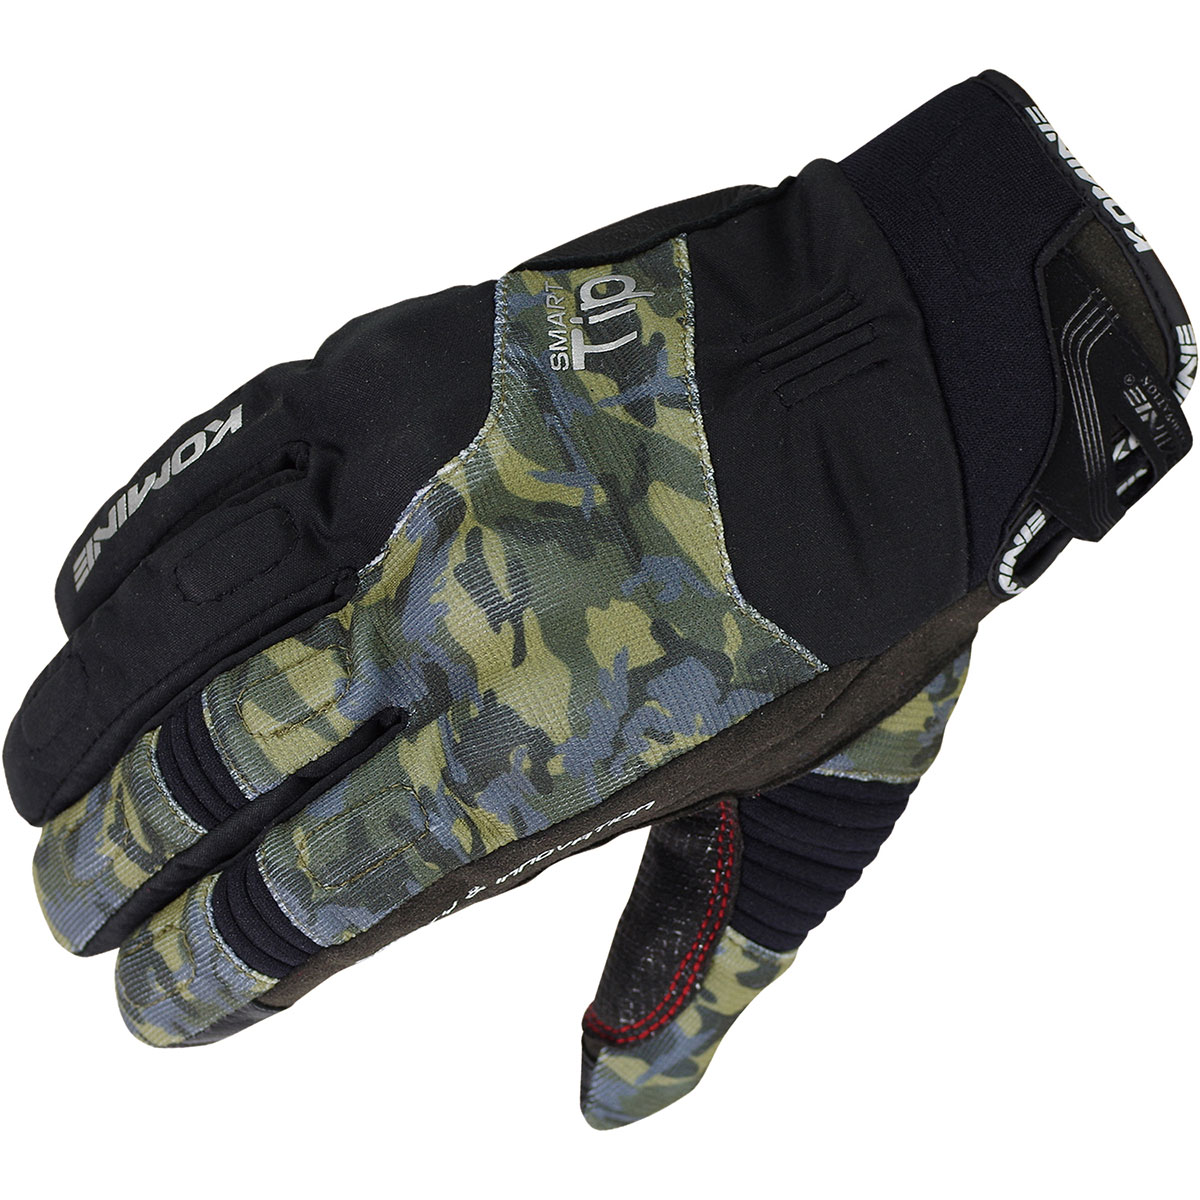 コミネ KOMINE バイク用 グローブ Gloves GK-818 プロテクトウインターグローブ ブラック カモ 黒 迷彩 XSサイズ 06-818/BKCA/XS